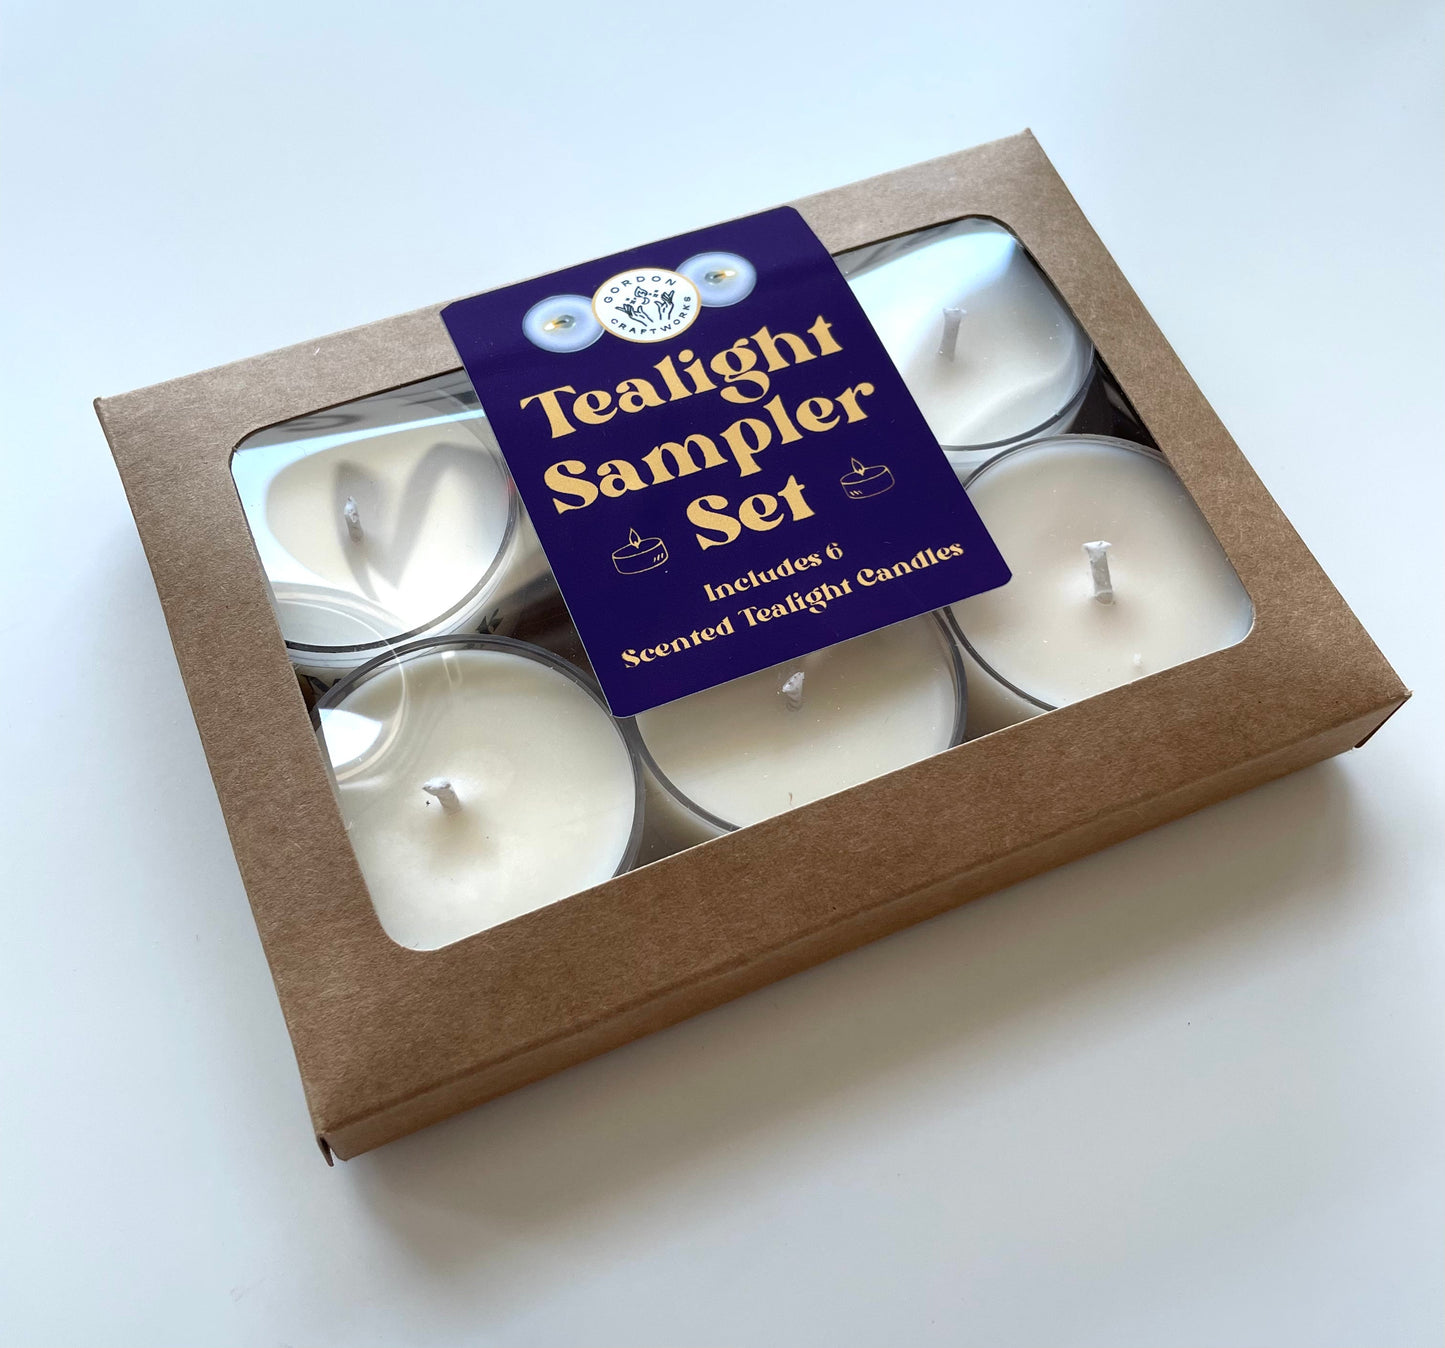 Tealight Sampler Set - Gordon Craftworks